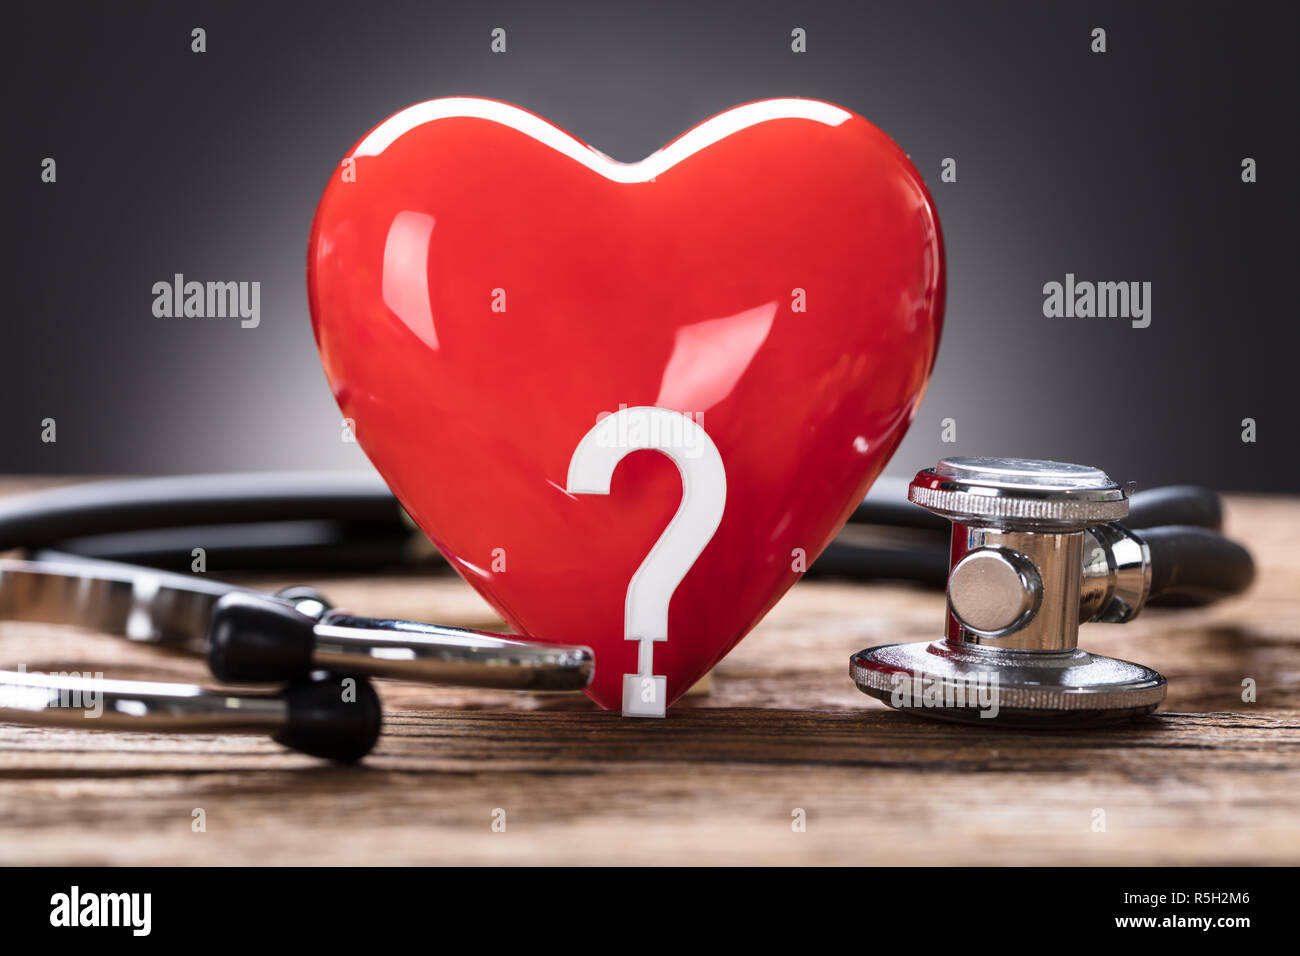 Cuore rosso e il punto interrogativo con uno stetoscopio su legno Foto Stock